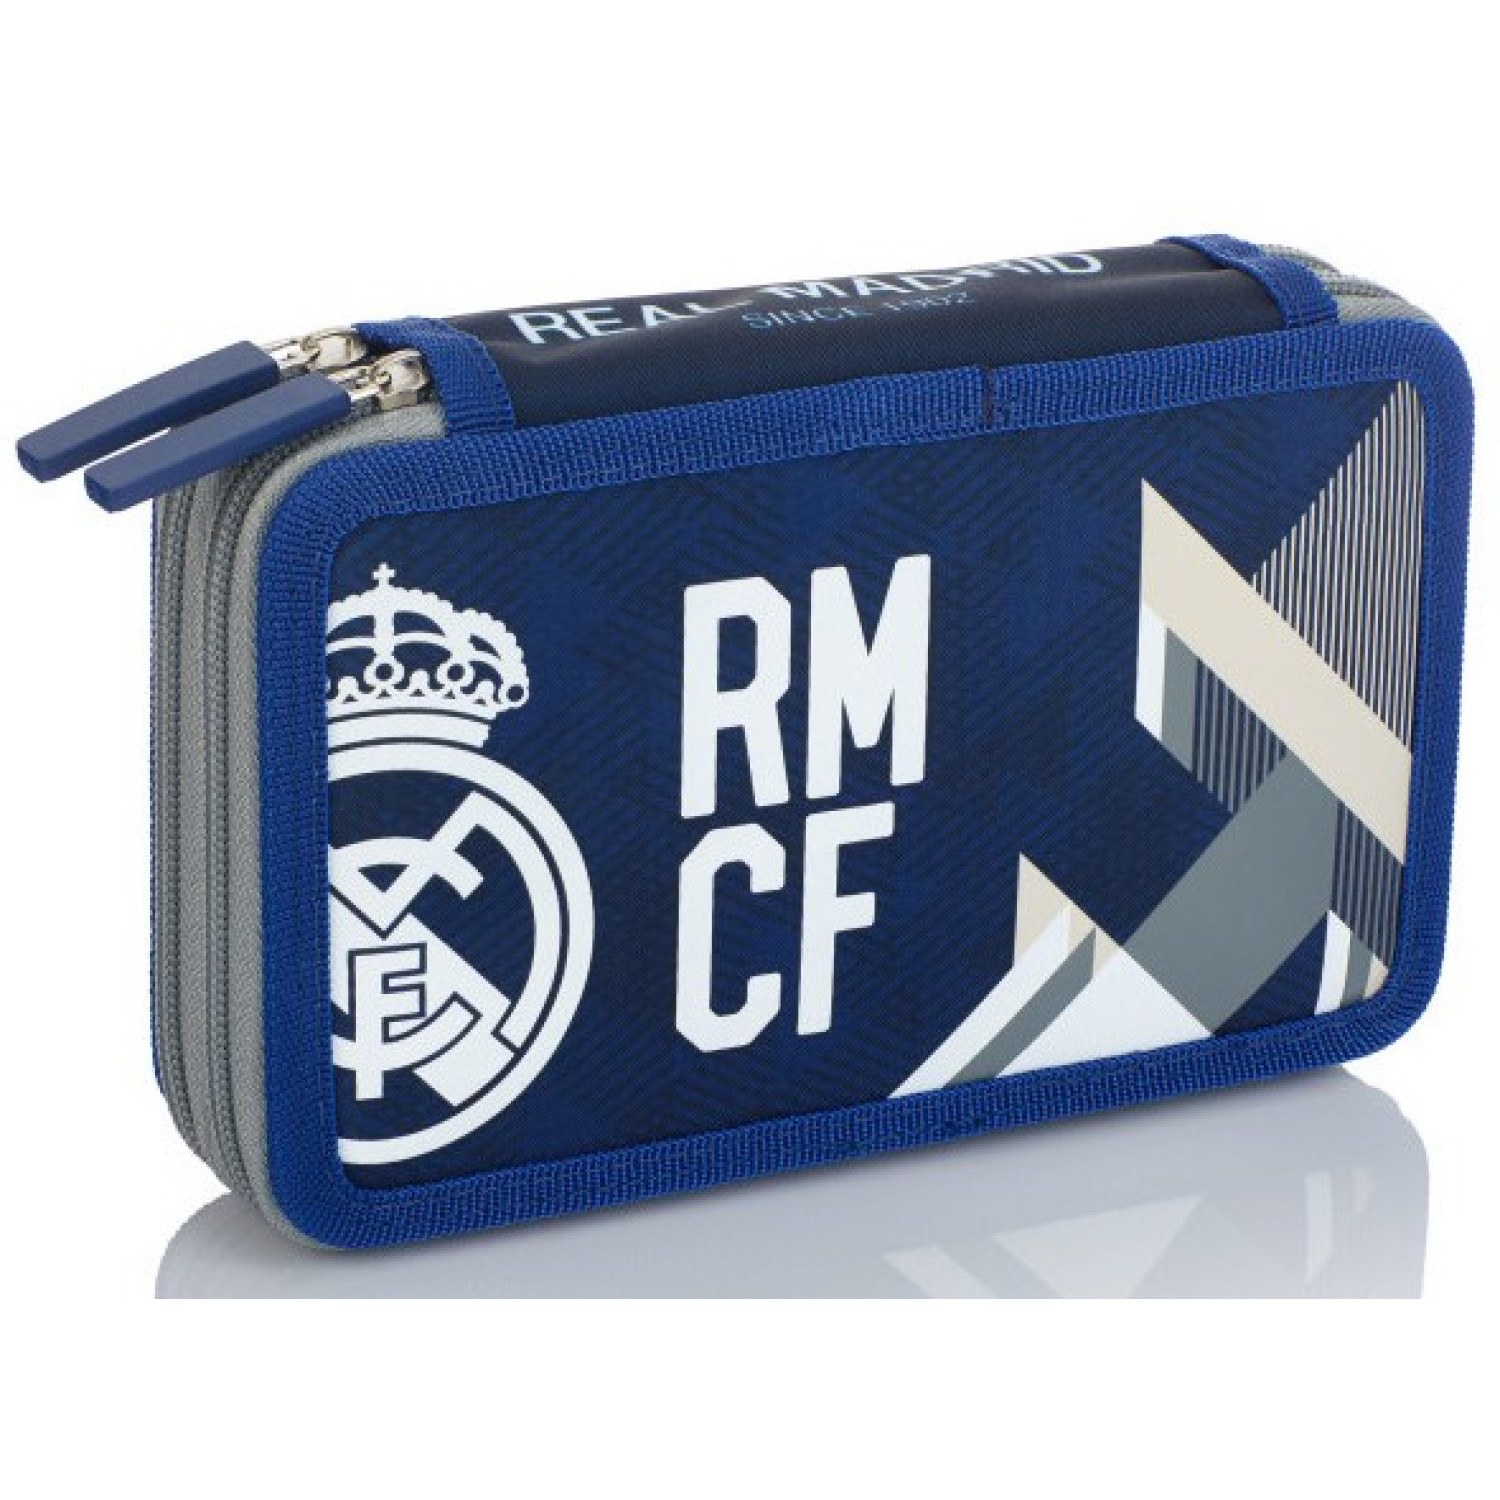 Несесер Real Madrid RM-184, две отделения, празен